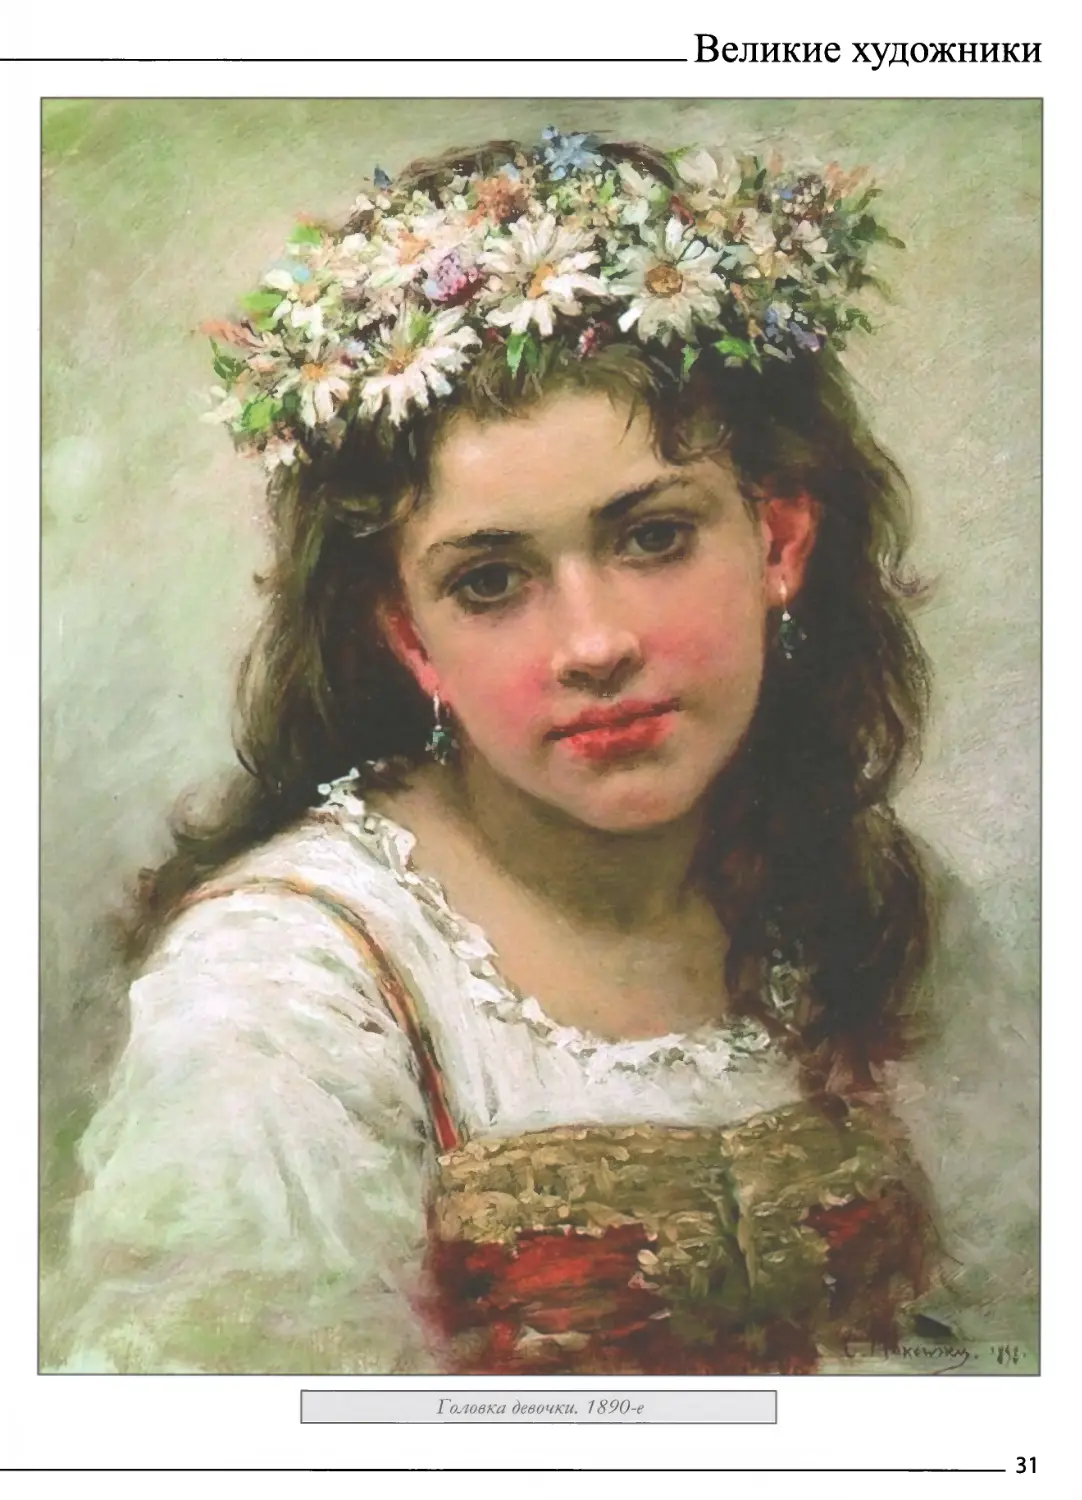 Головка девочки. 1890-е